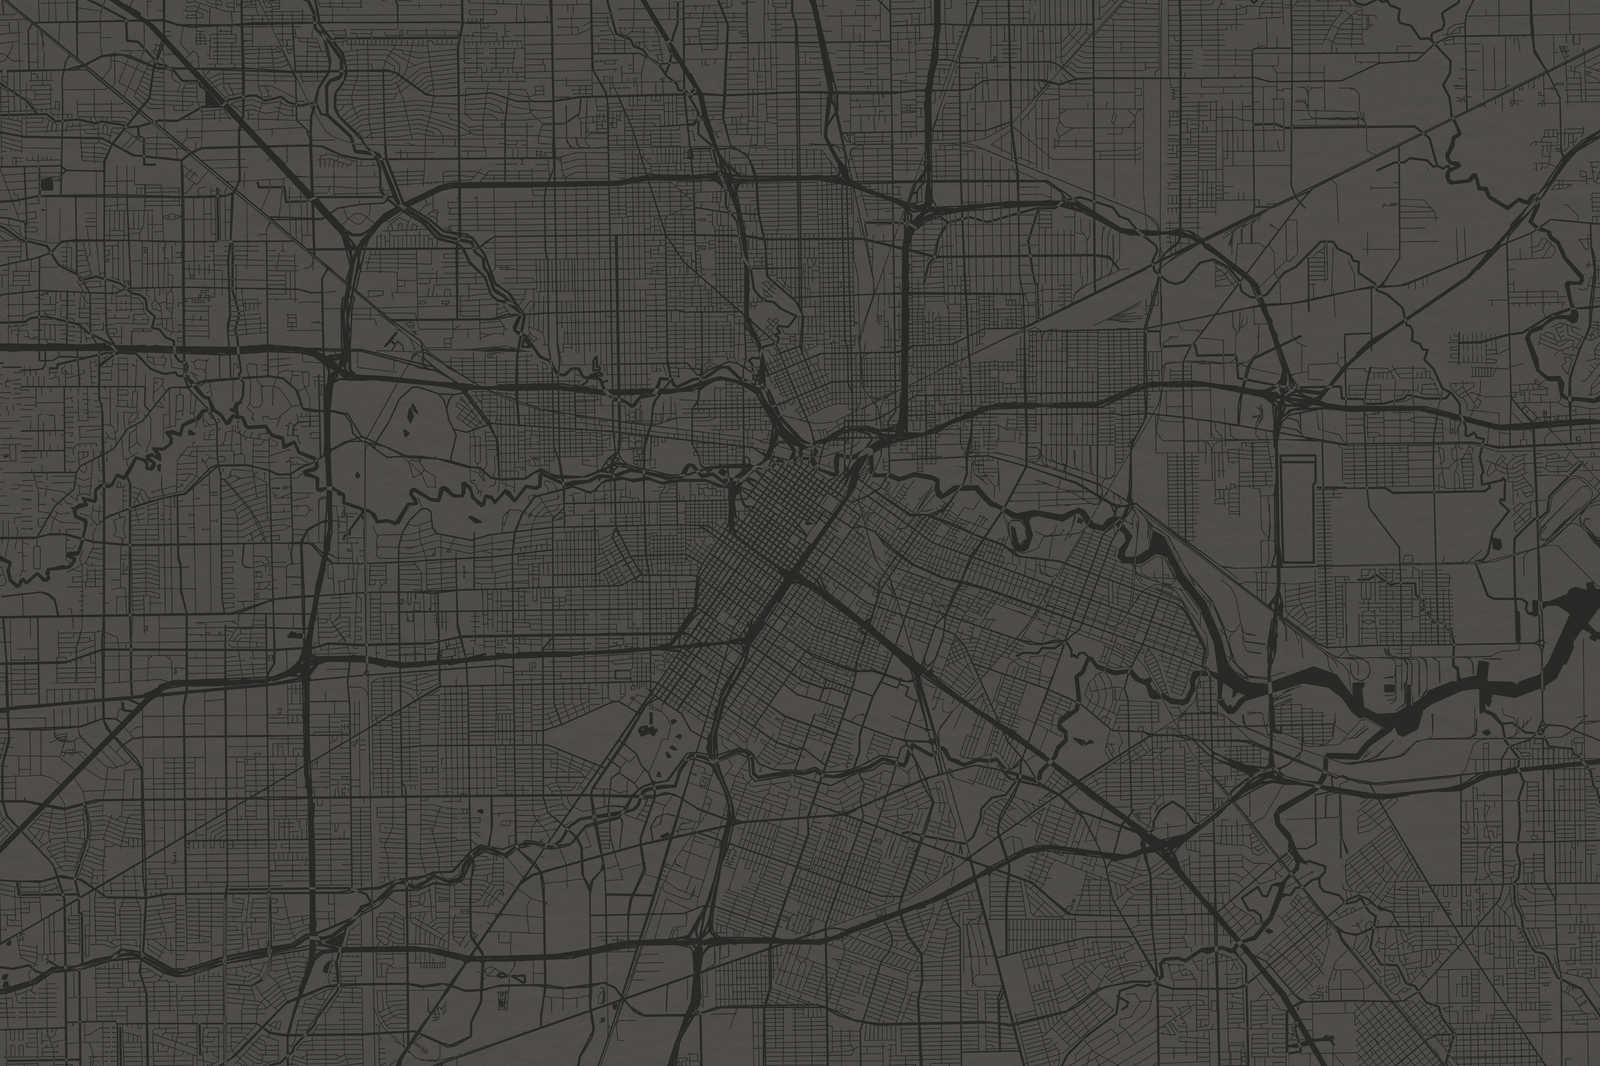             Tableau toile Carte de la ville avec tracé des rues | noir - 0,90 m x 0,60 m
        